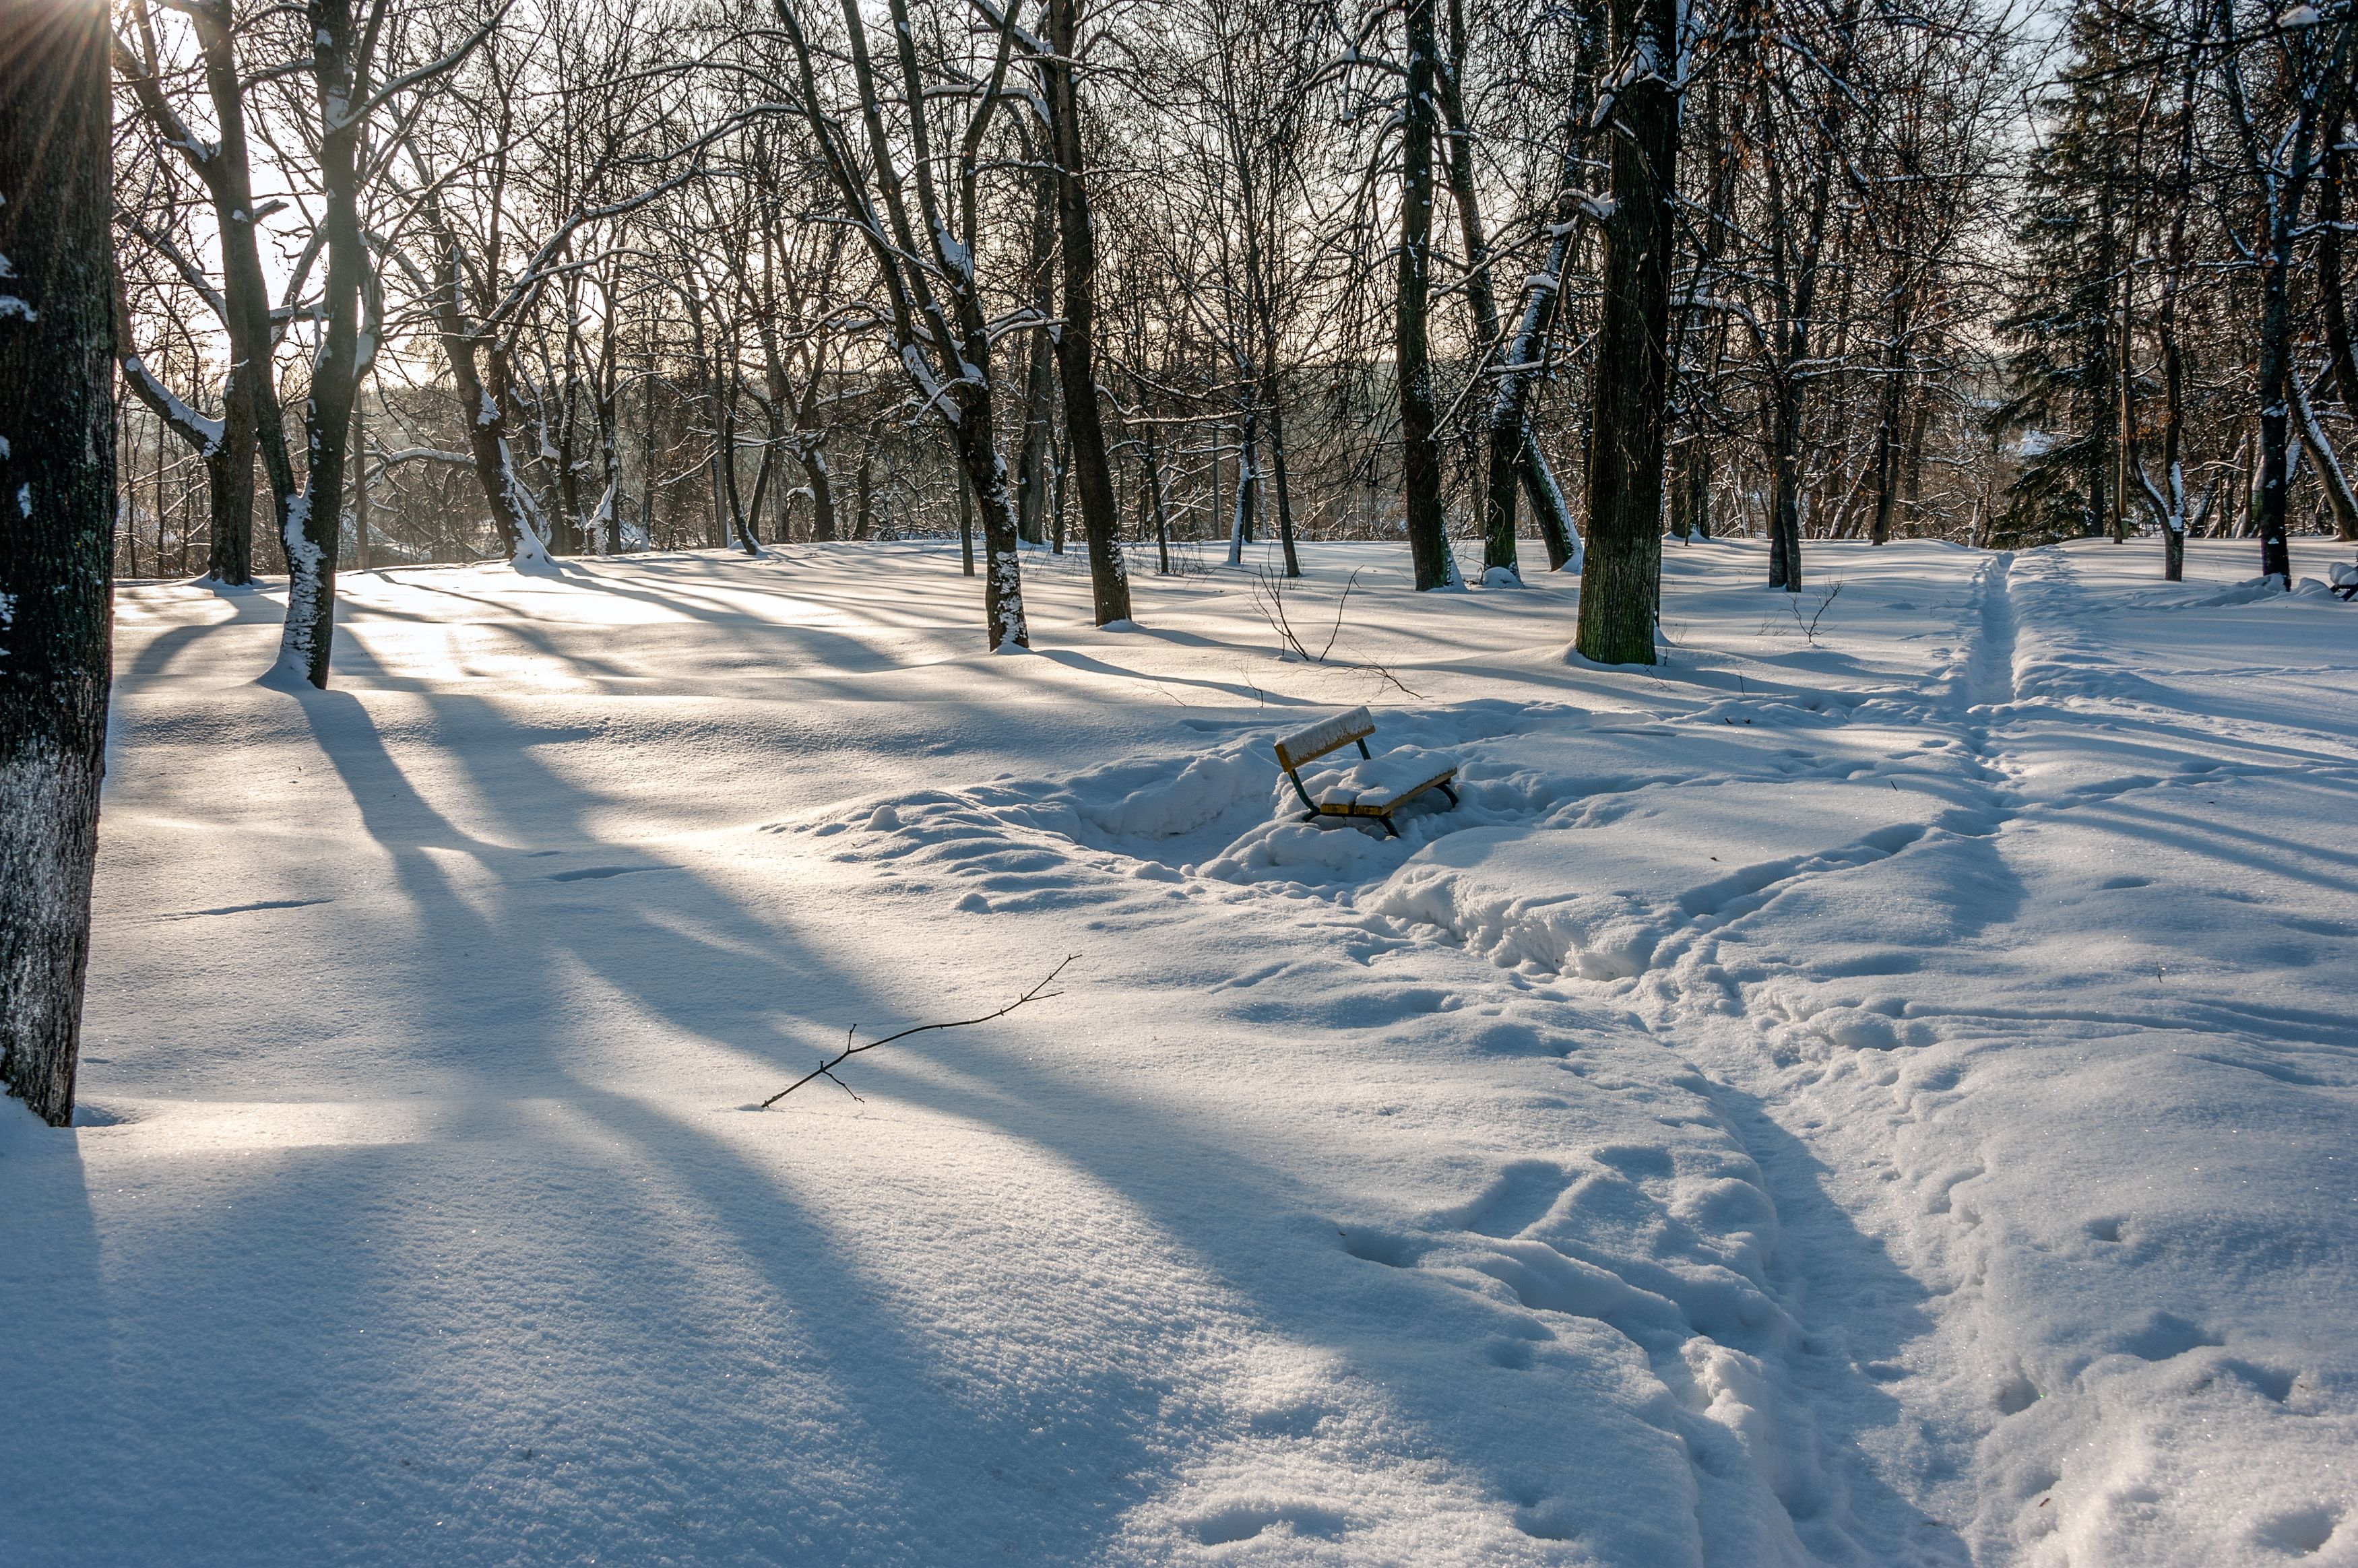 Прийти неожиданно дорожки не расчищены. Луговой парк зимой. Зимняя дорожка в парке. Очищенные тропинки зимой. Парк Лыткарино зима.